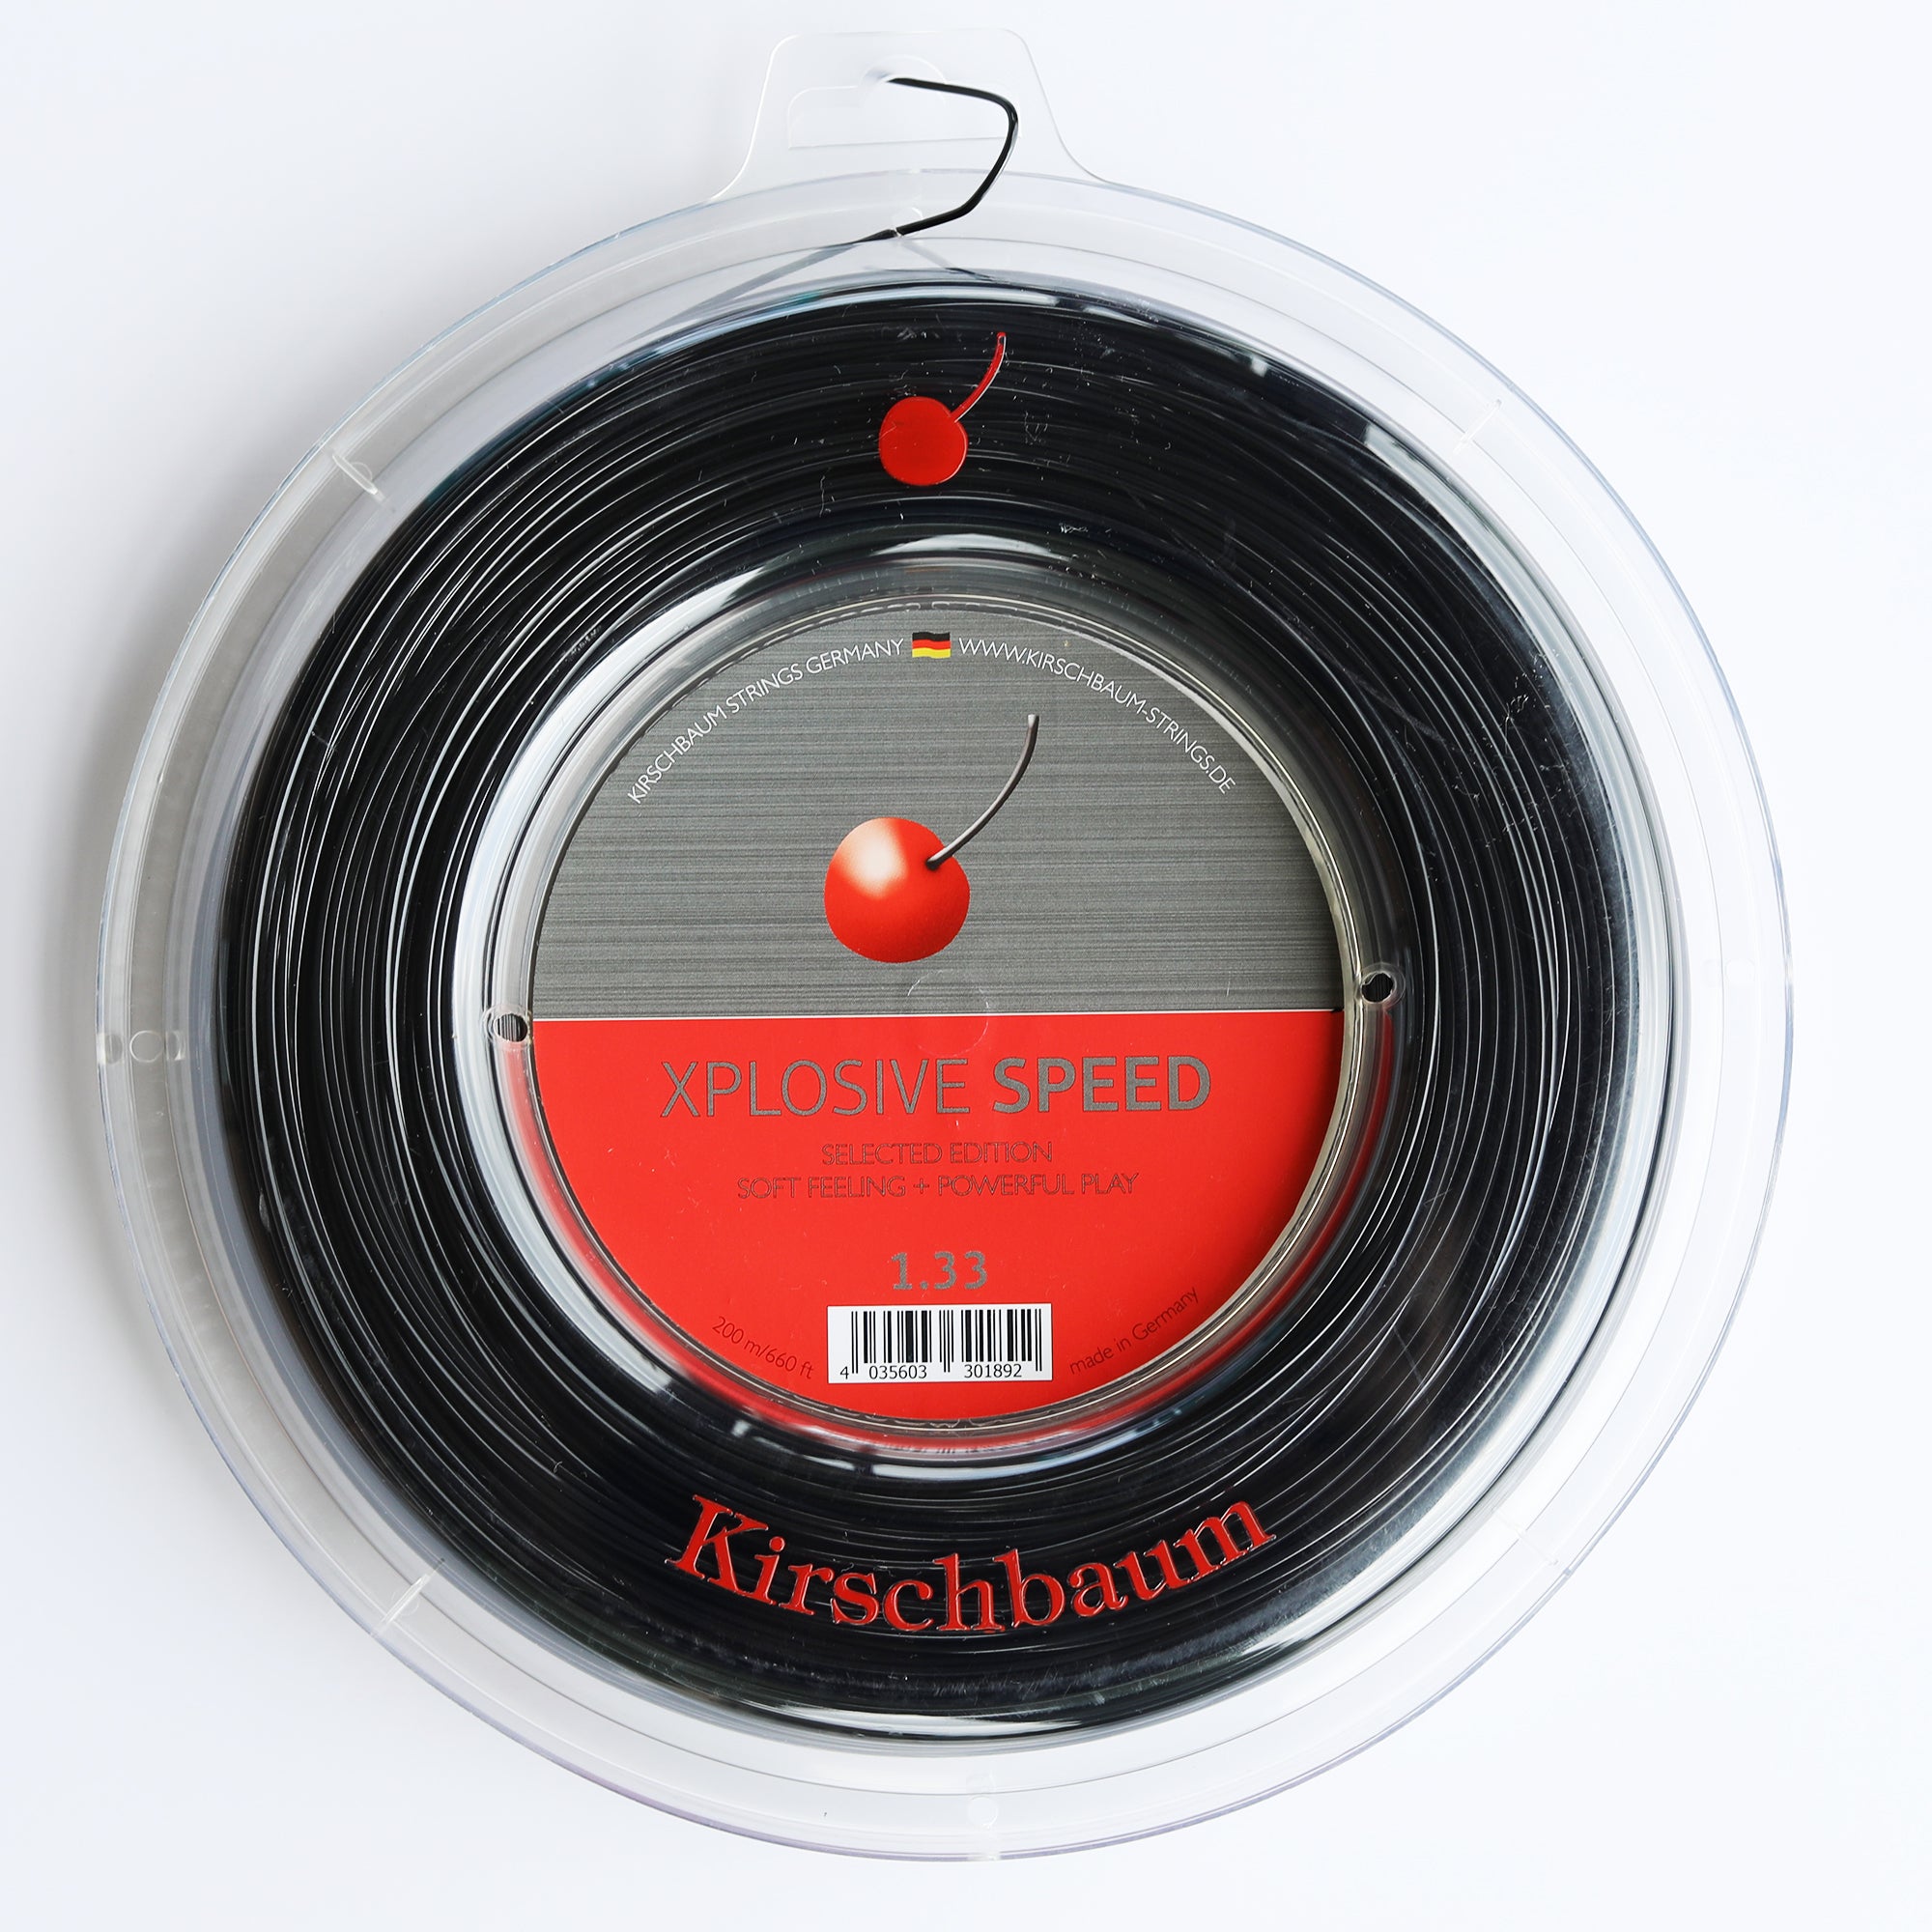 Xplosive Speed Reel – Kirschbaum USA